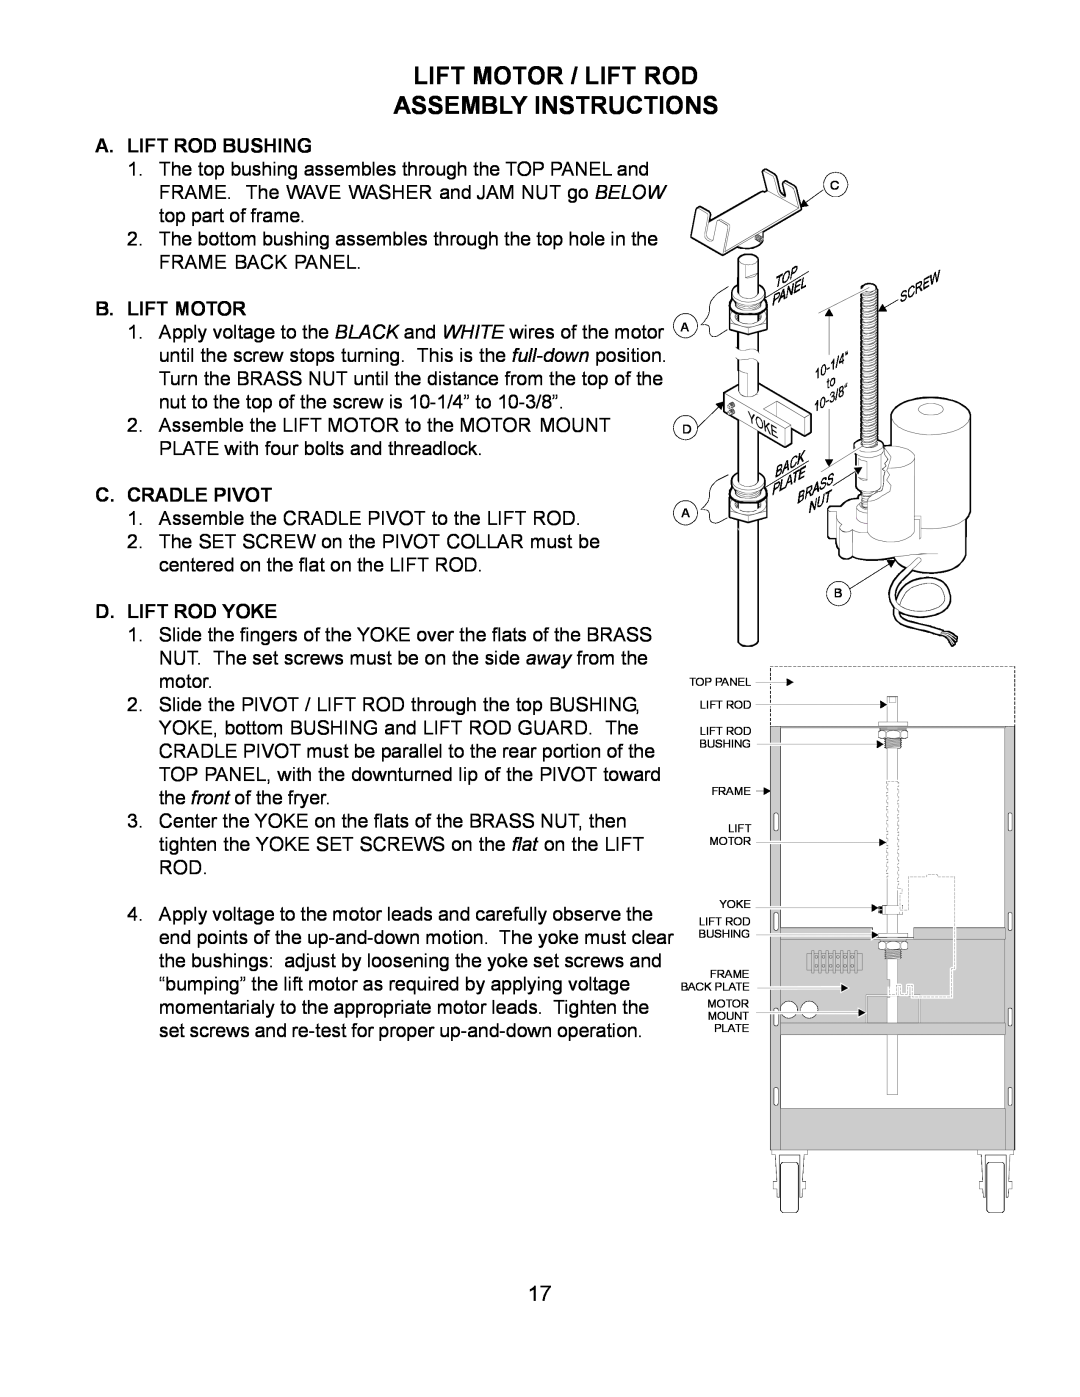 Wells WFGA-60FS Lift Motor / Lift Rod Assembly Instructions, A. Lift Rod Bushing, B. Lift Motor, C. Cradle Pivot 